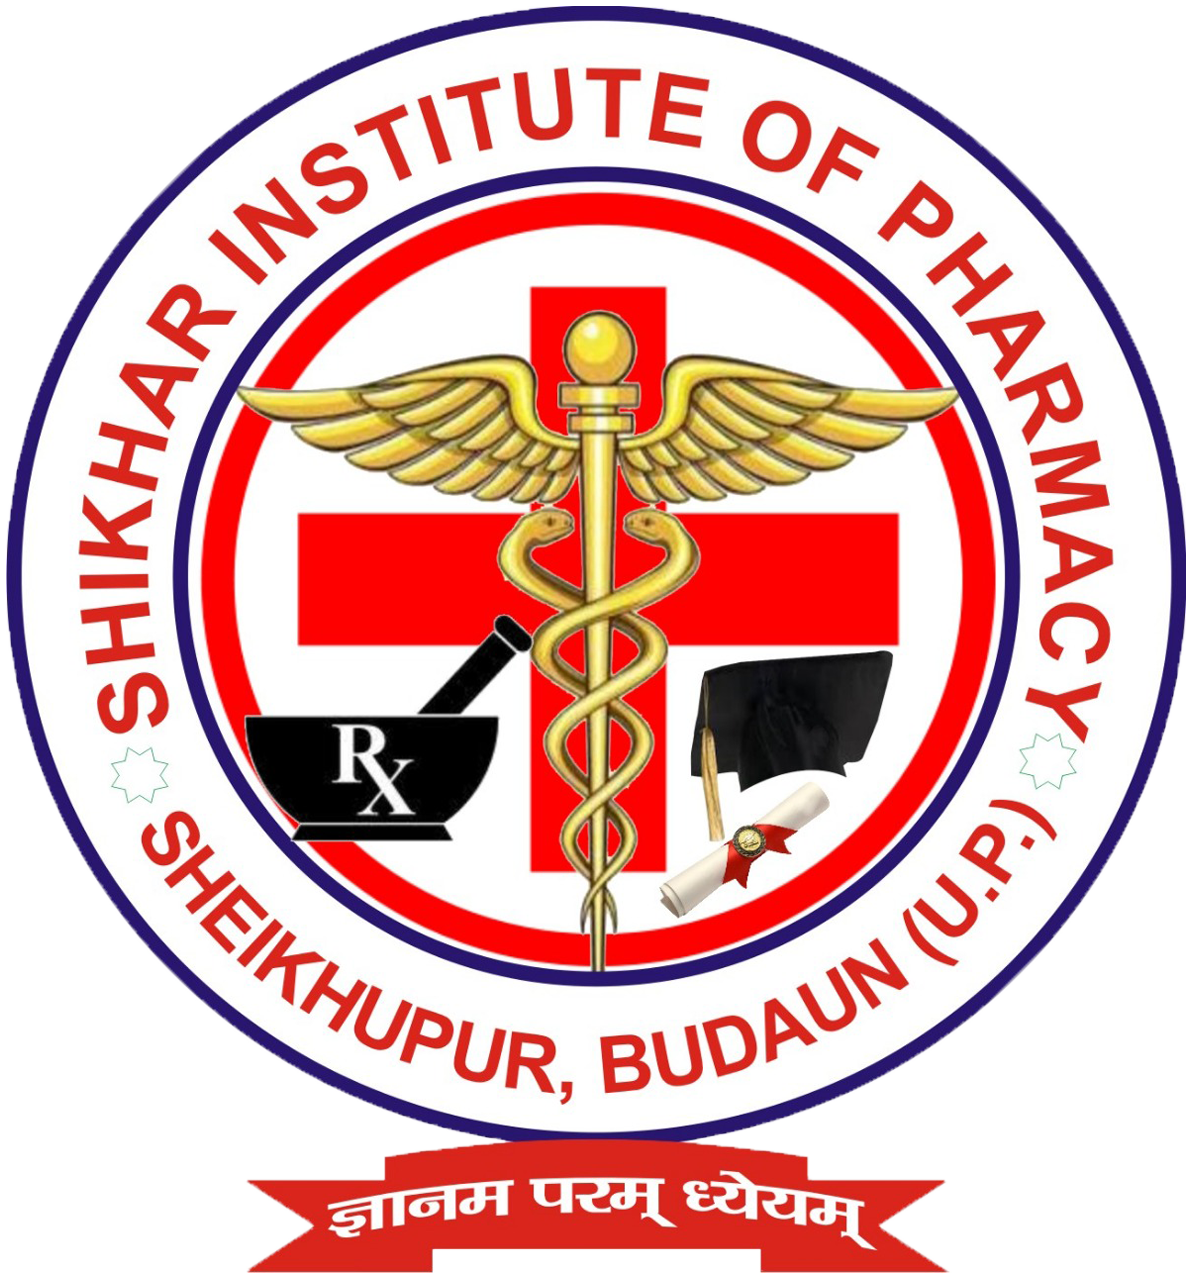 Shikhar Institute of Pharmacy